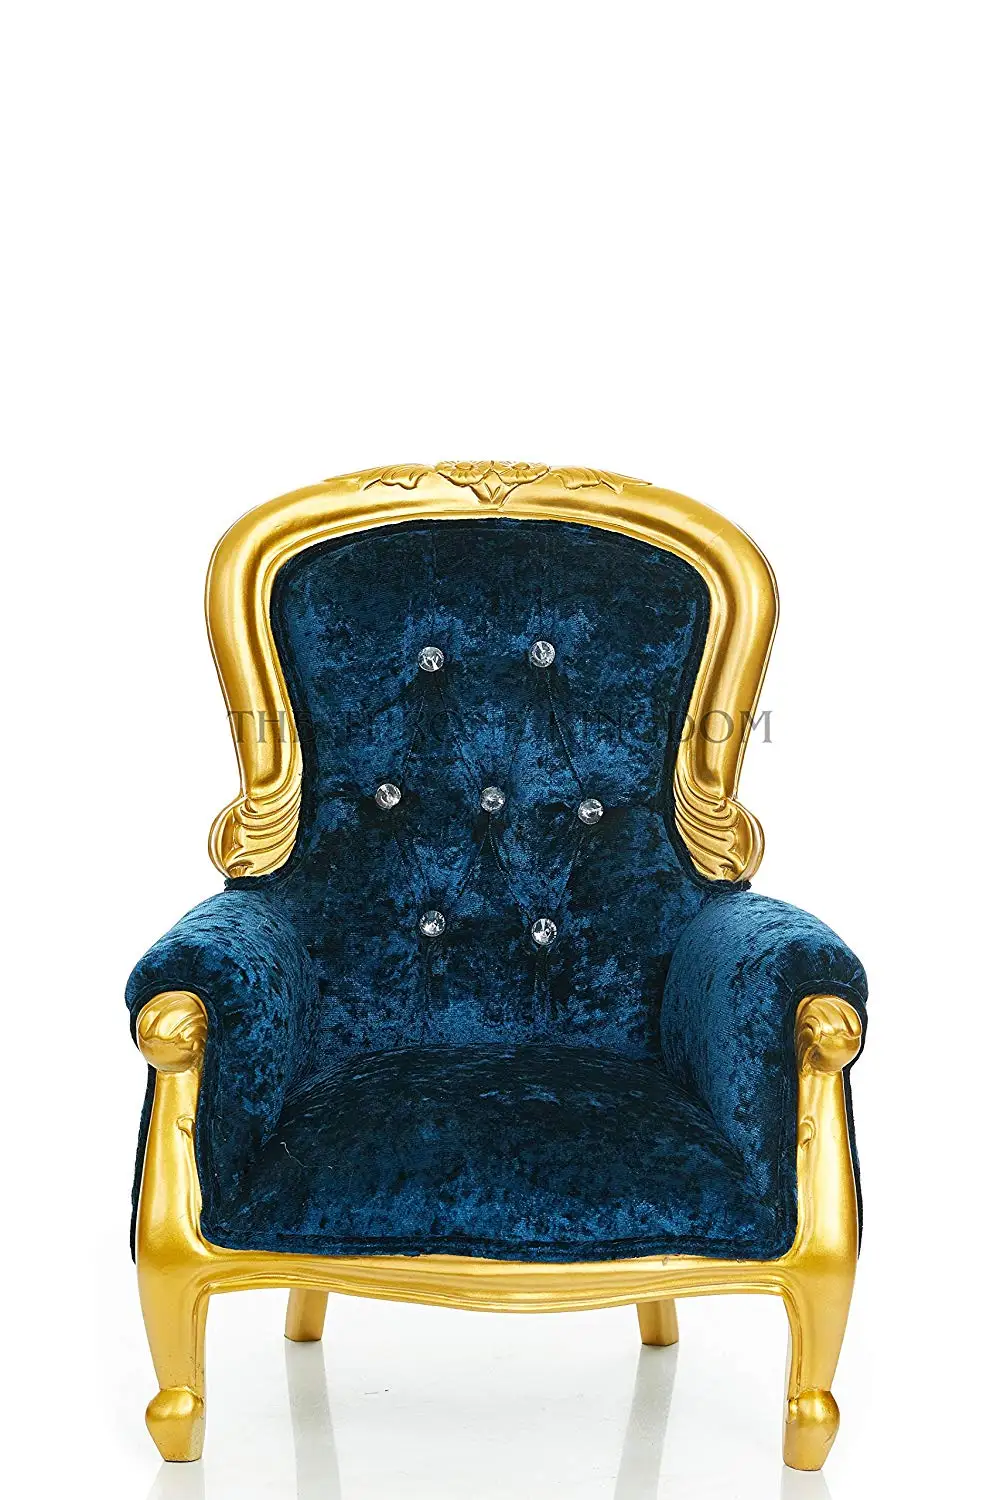 children's throne chair sale